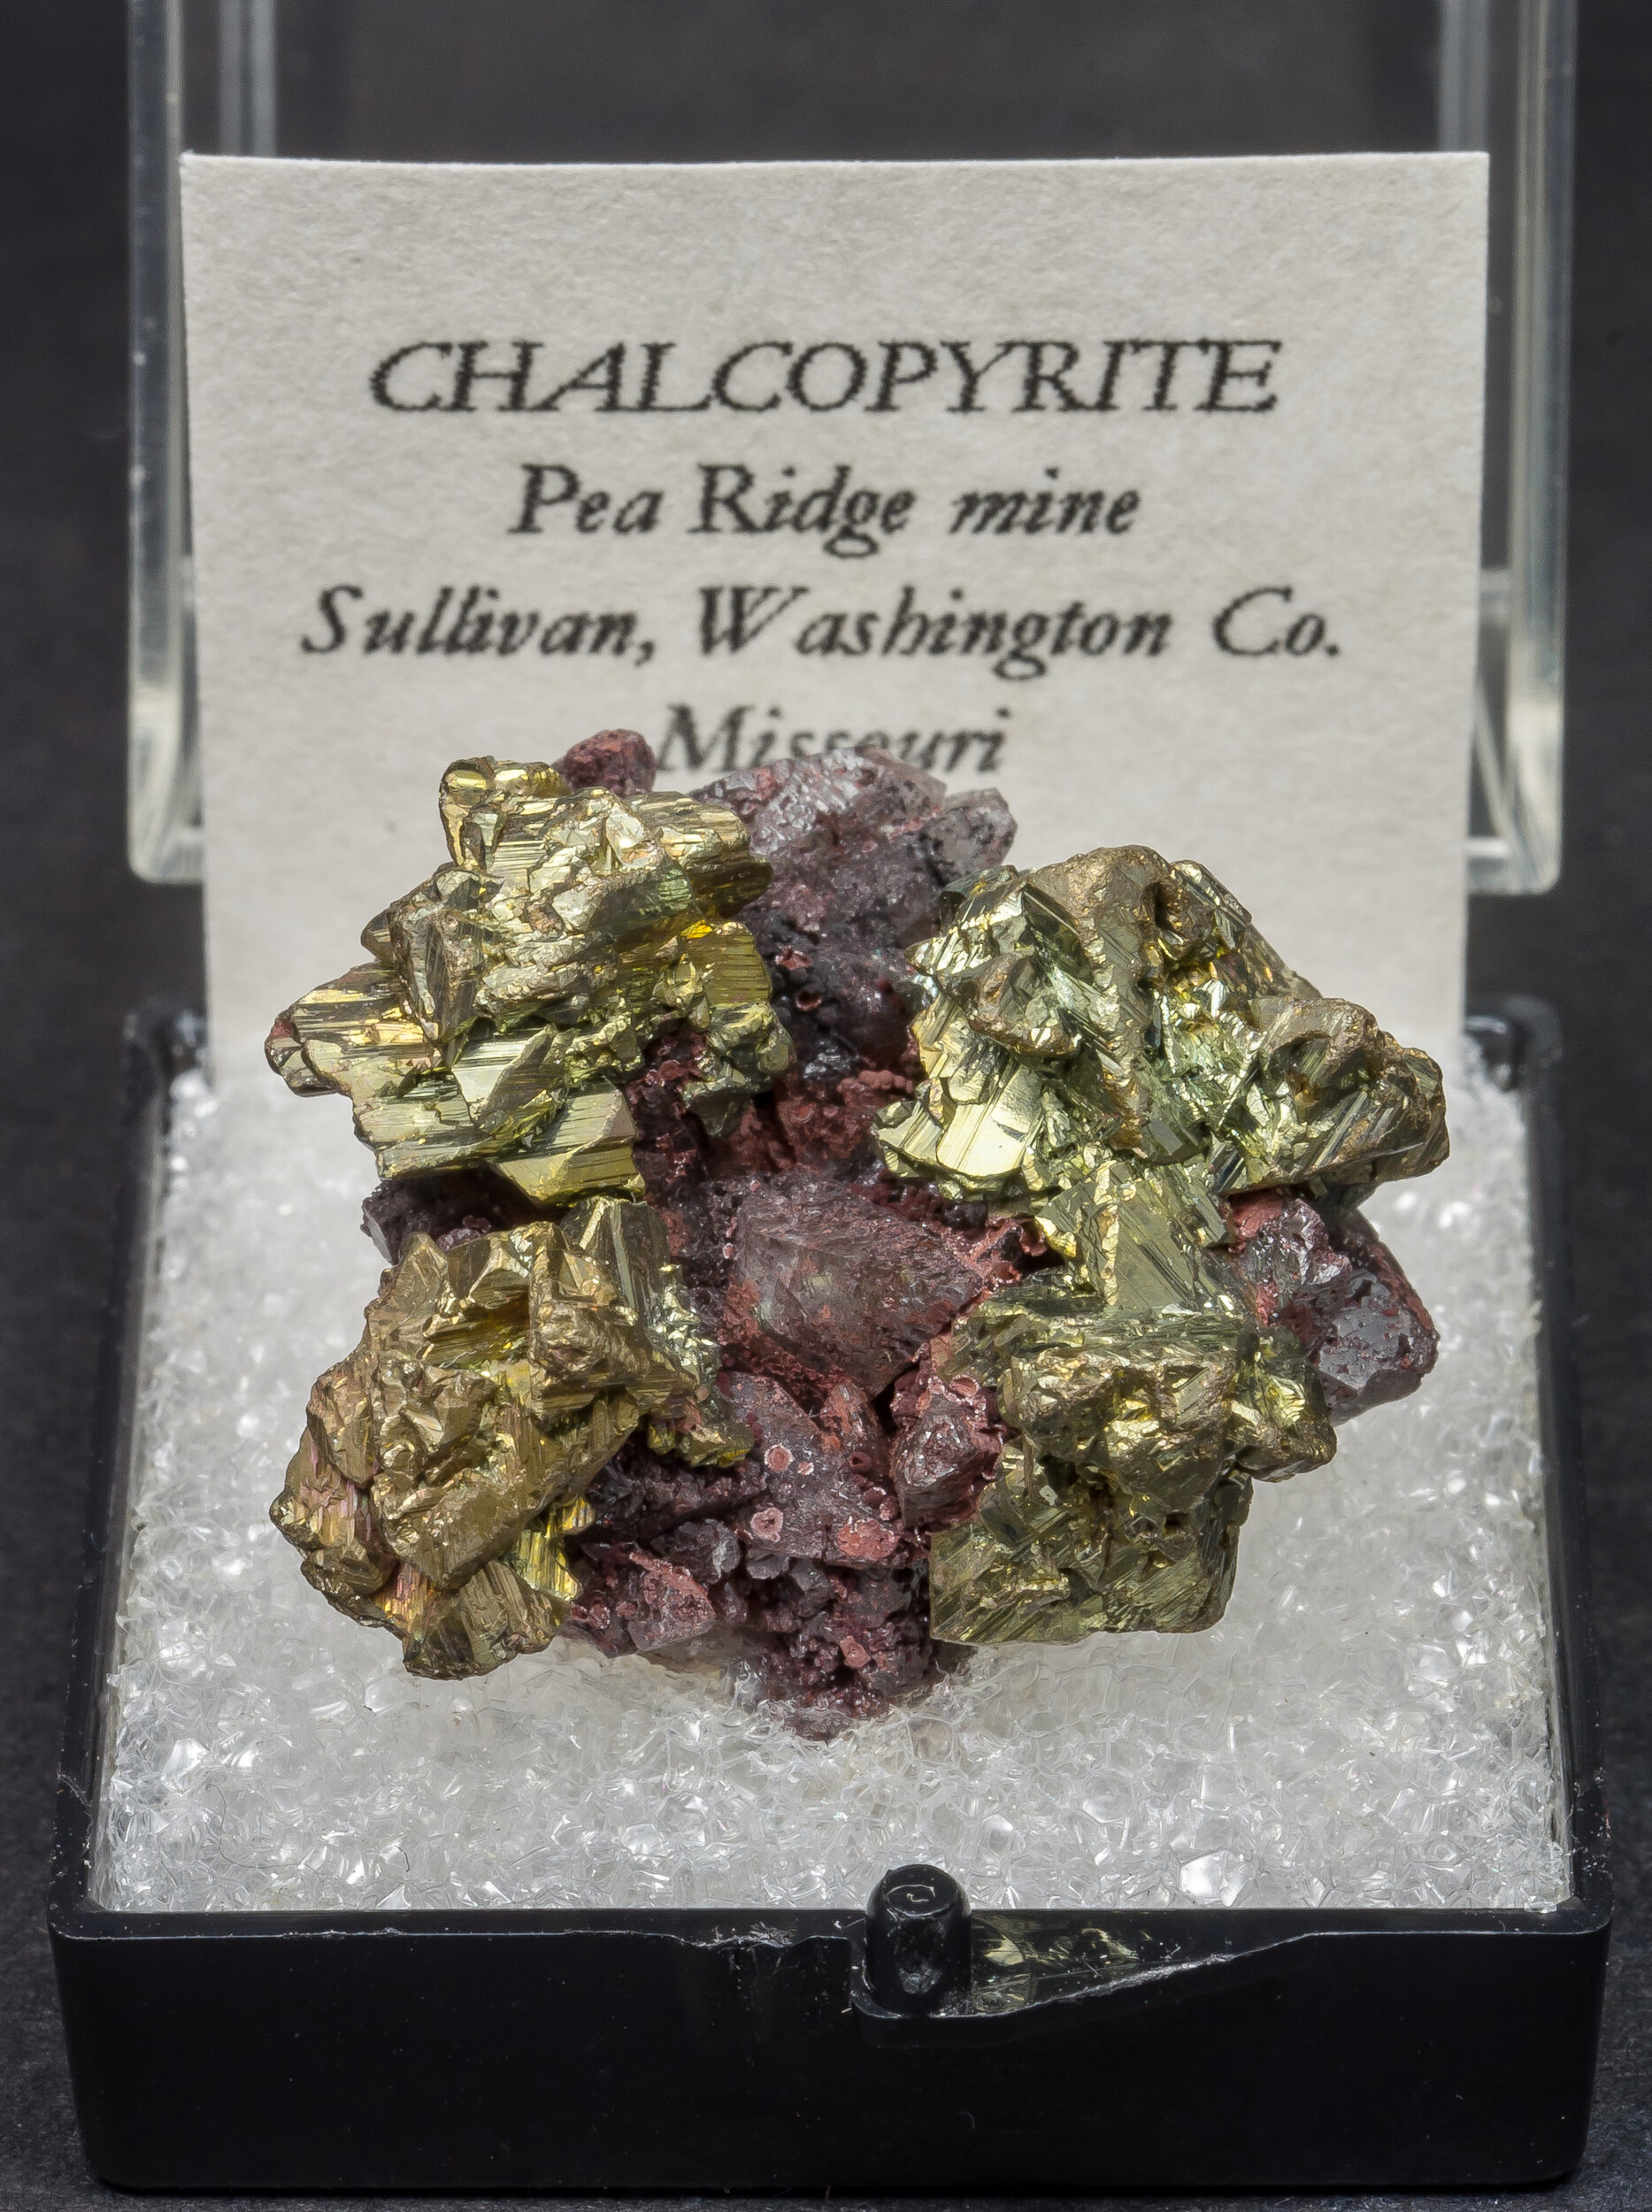 specimens/s_imagesAO2/Chalcopyrite-TXA14AO2f.jpg